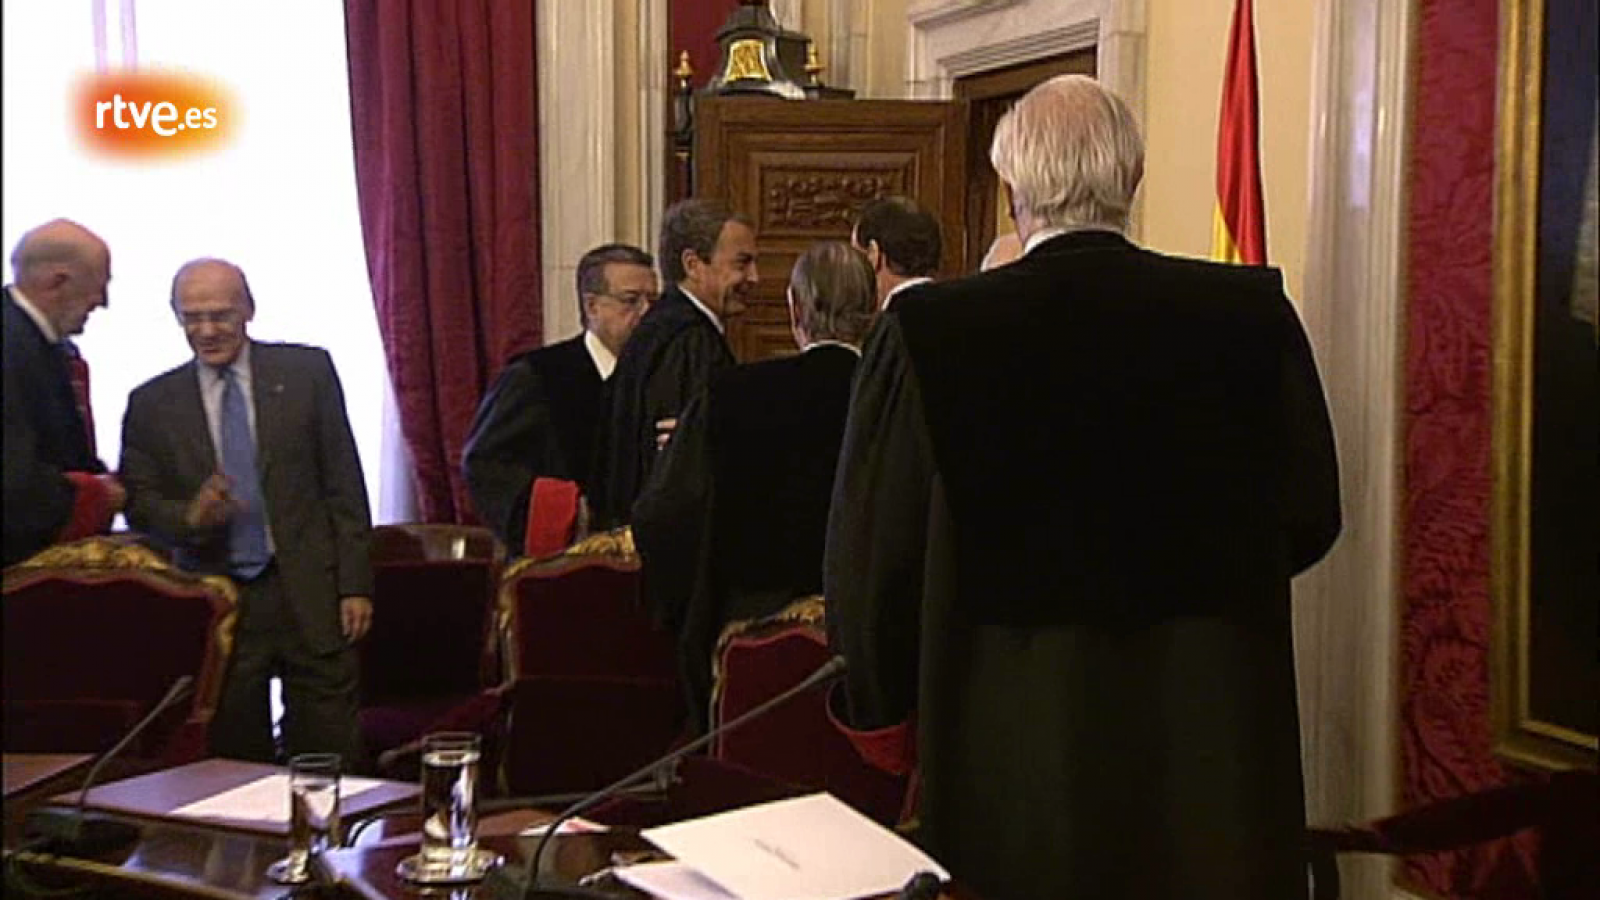 Rajoy y Zapatero se saludan en el Consejo de Estado. Ambos han asistido a la toma de posesión de José María Romay Beccaría como nuevo presidente del Consejo de Estado. 